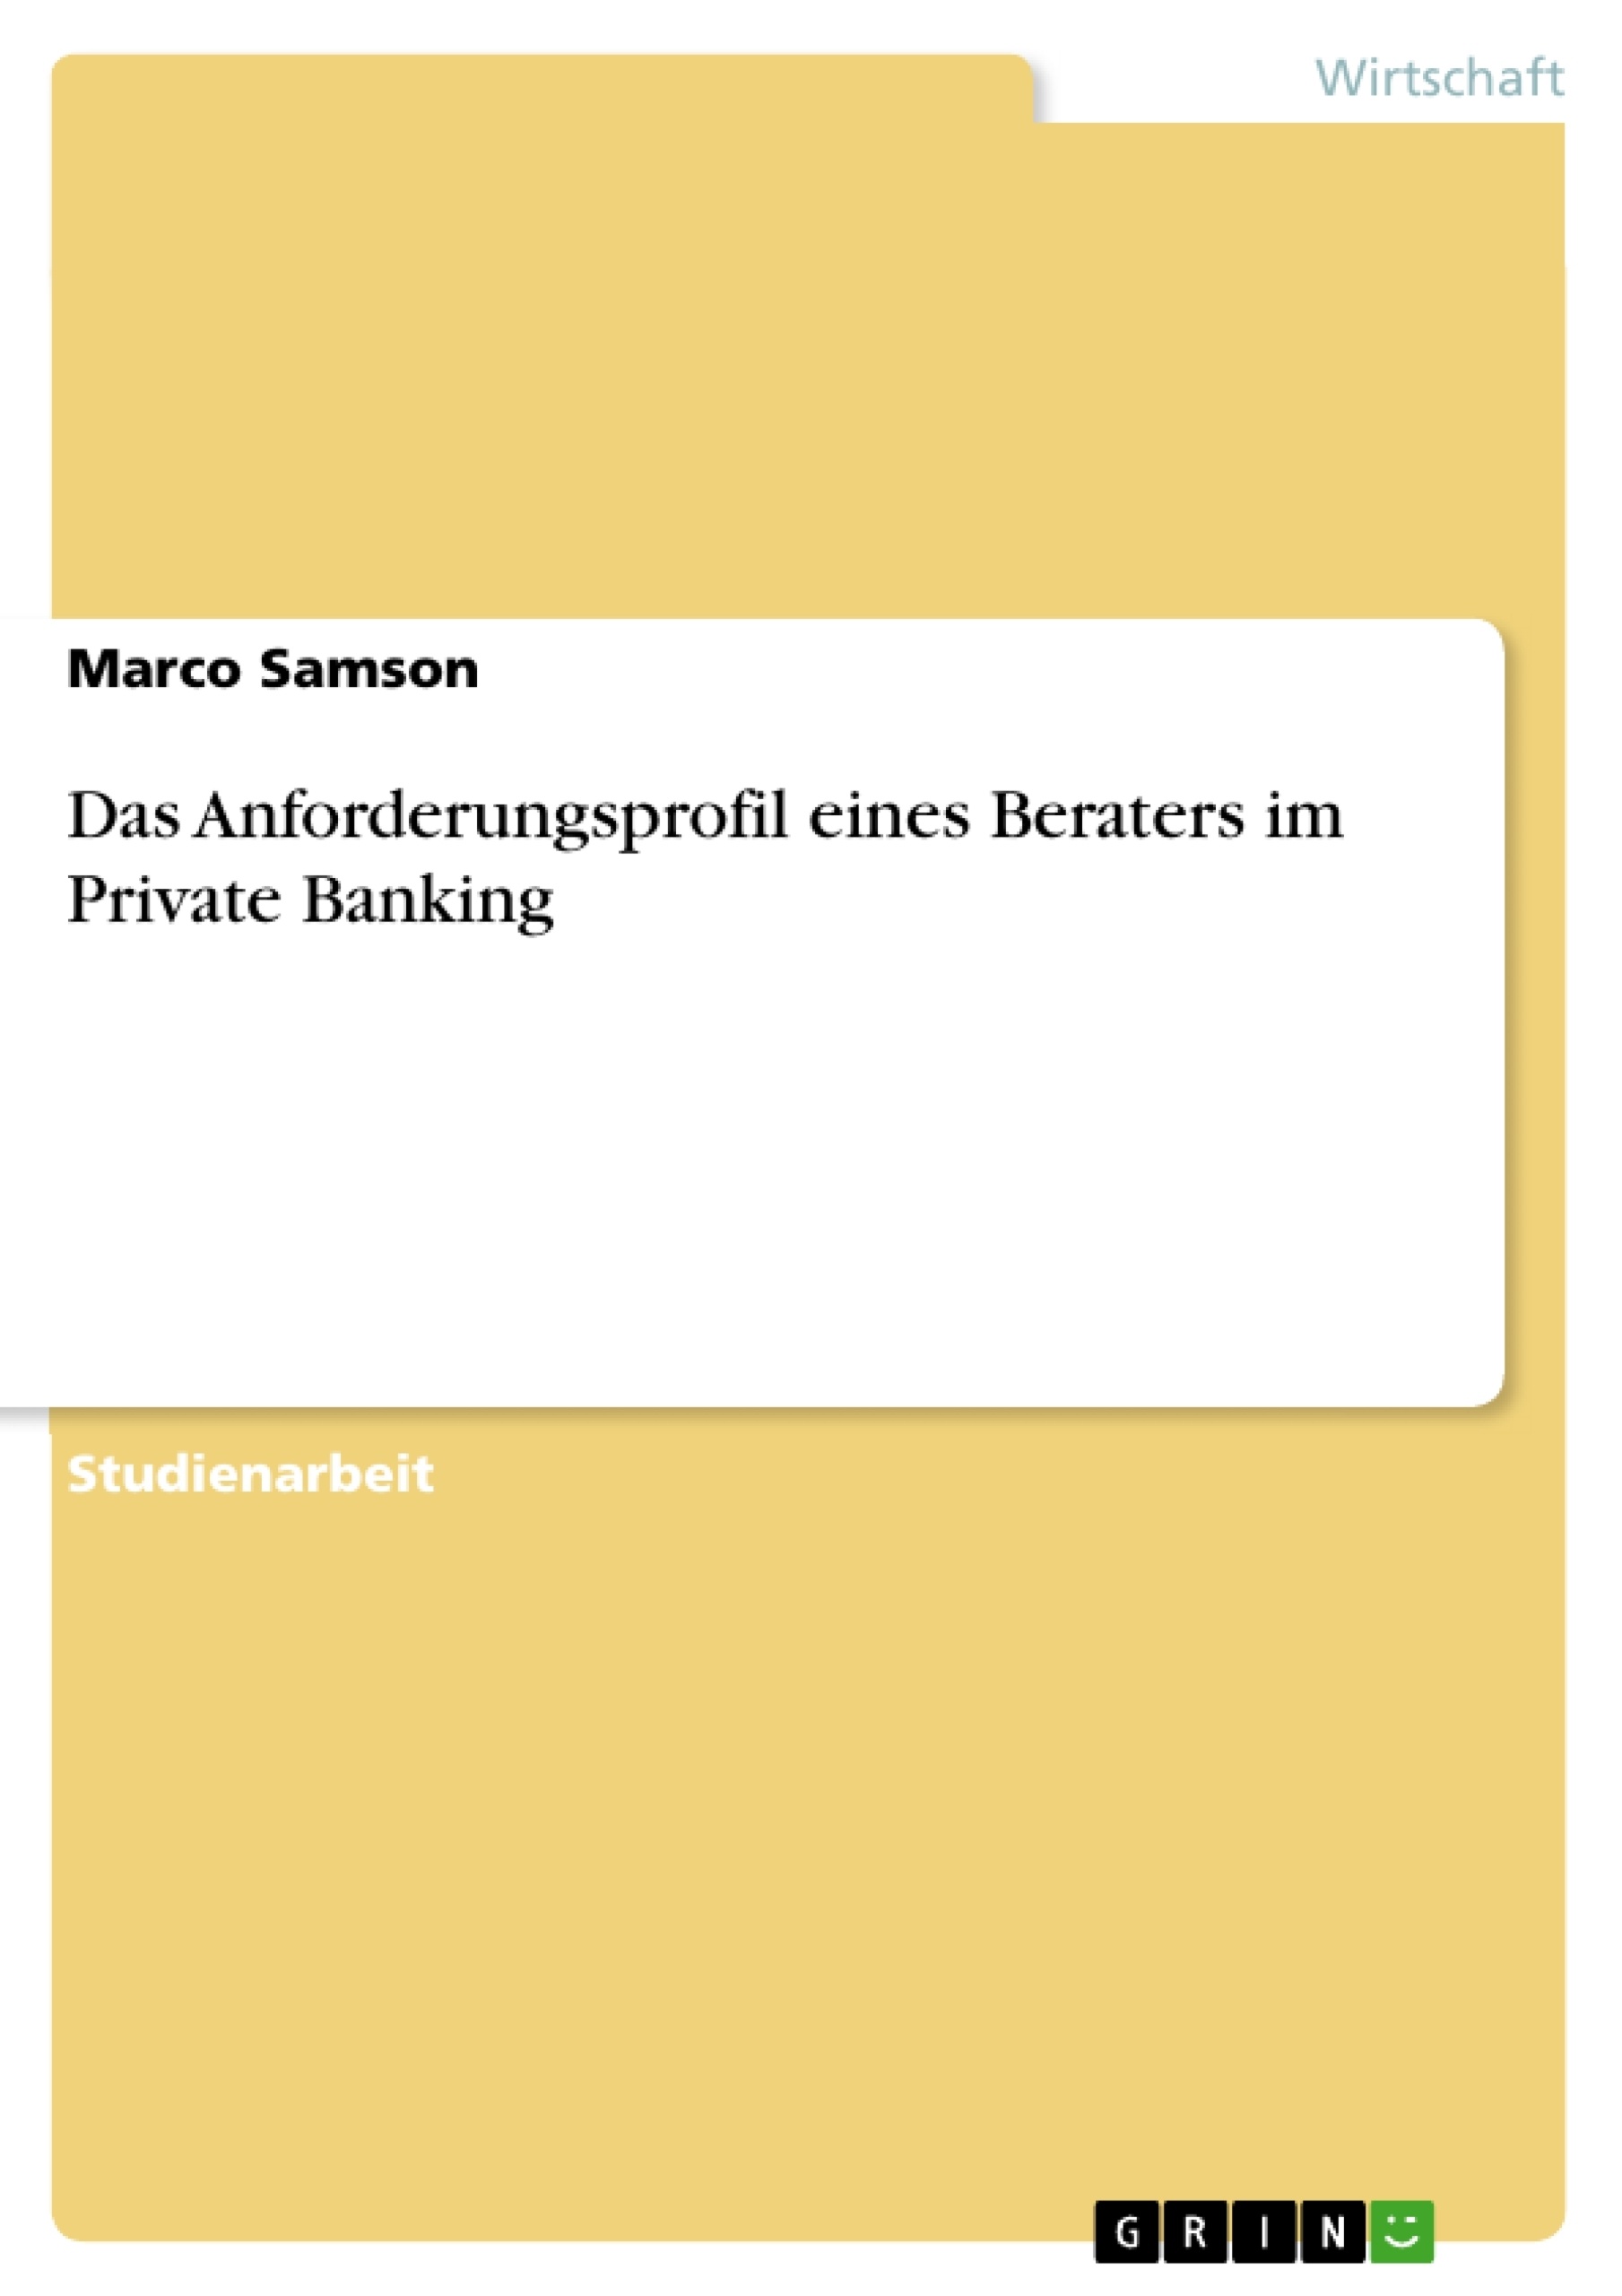 Título: Das Anforderungsprofil eines Beraters im Private Banking